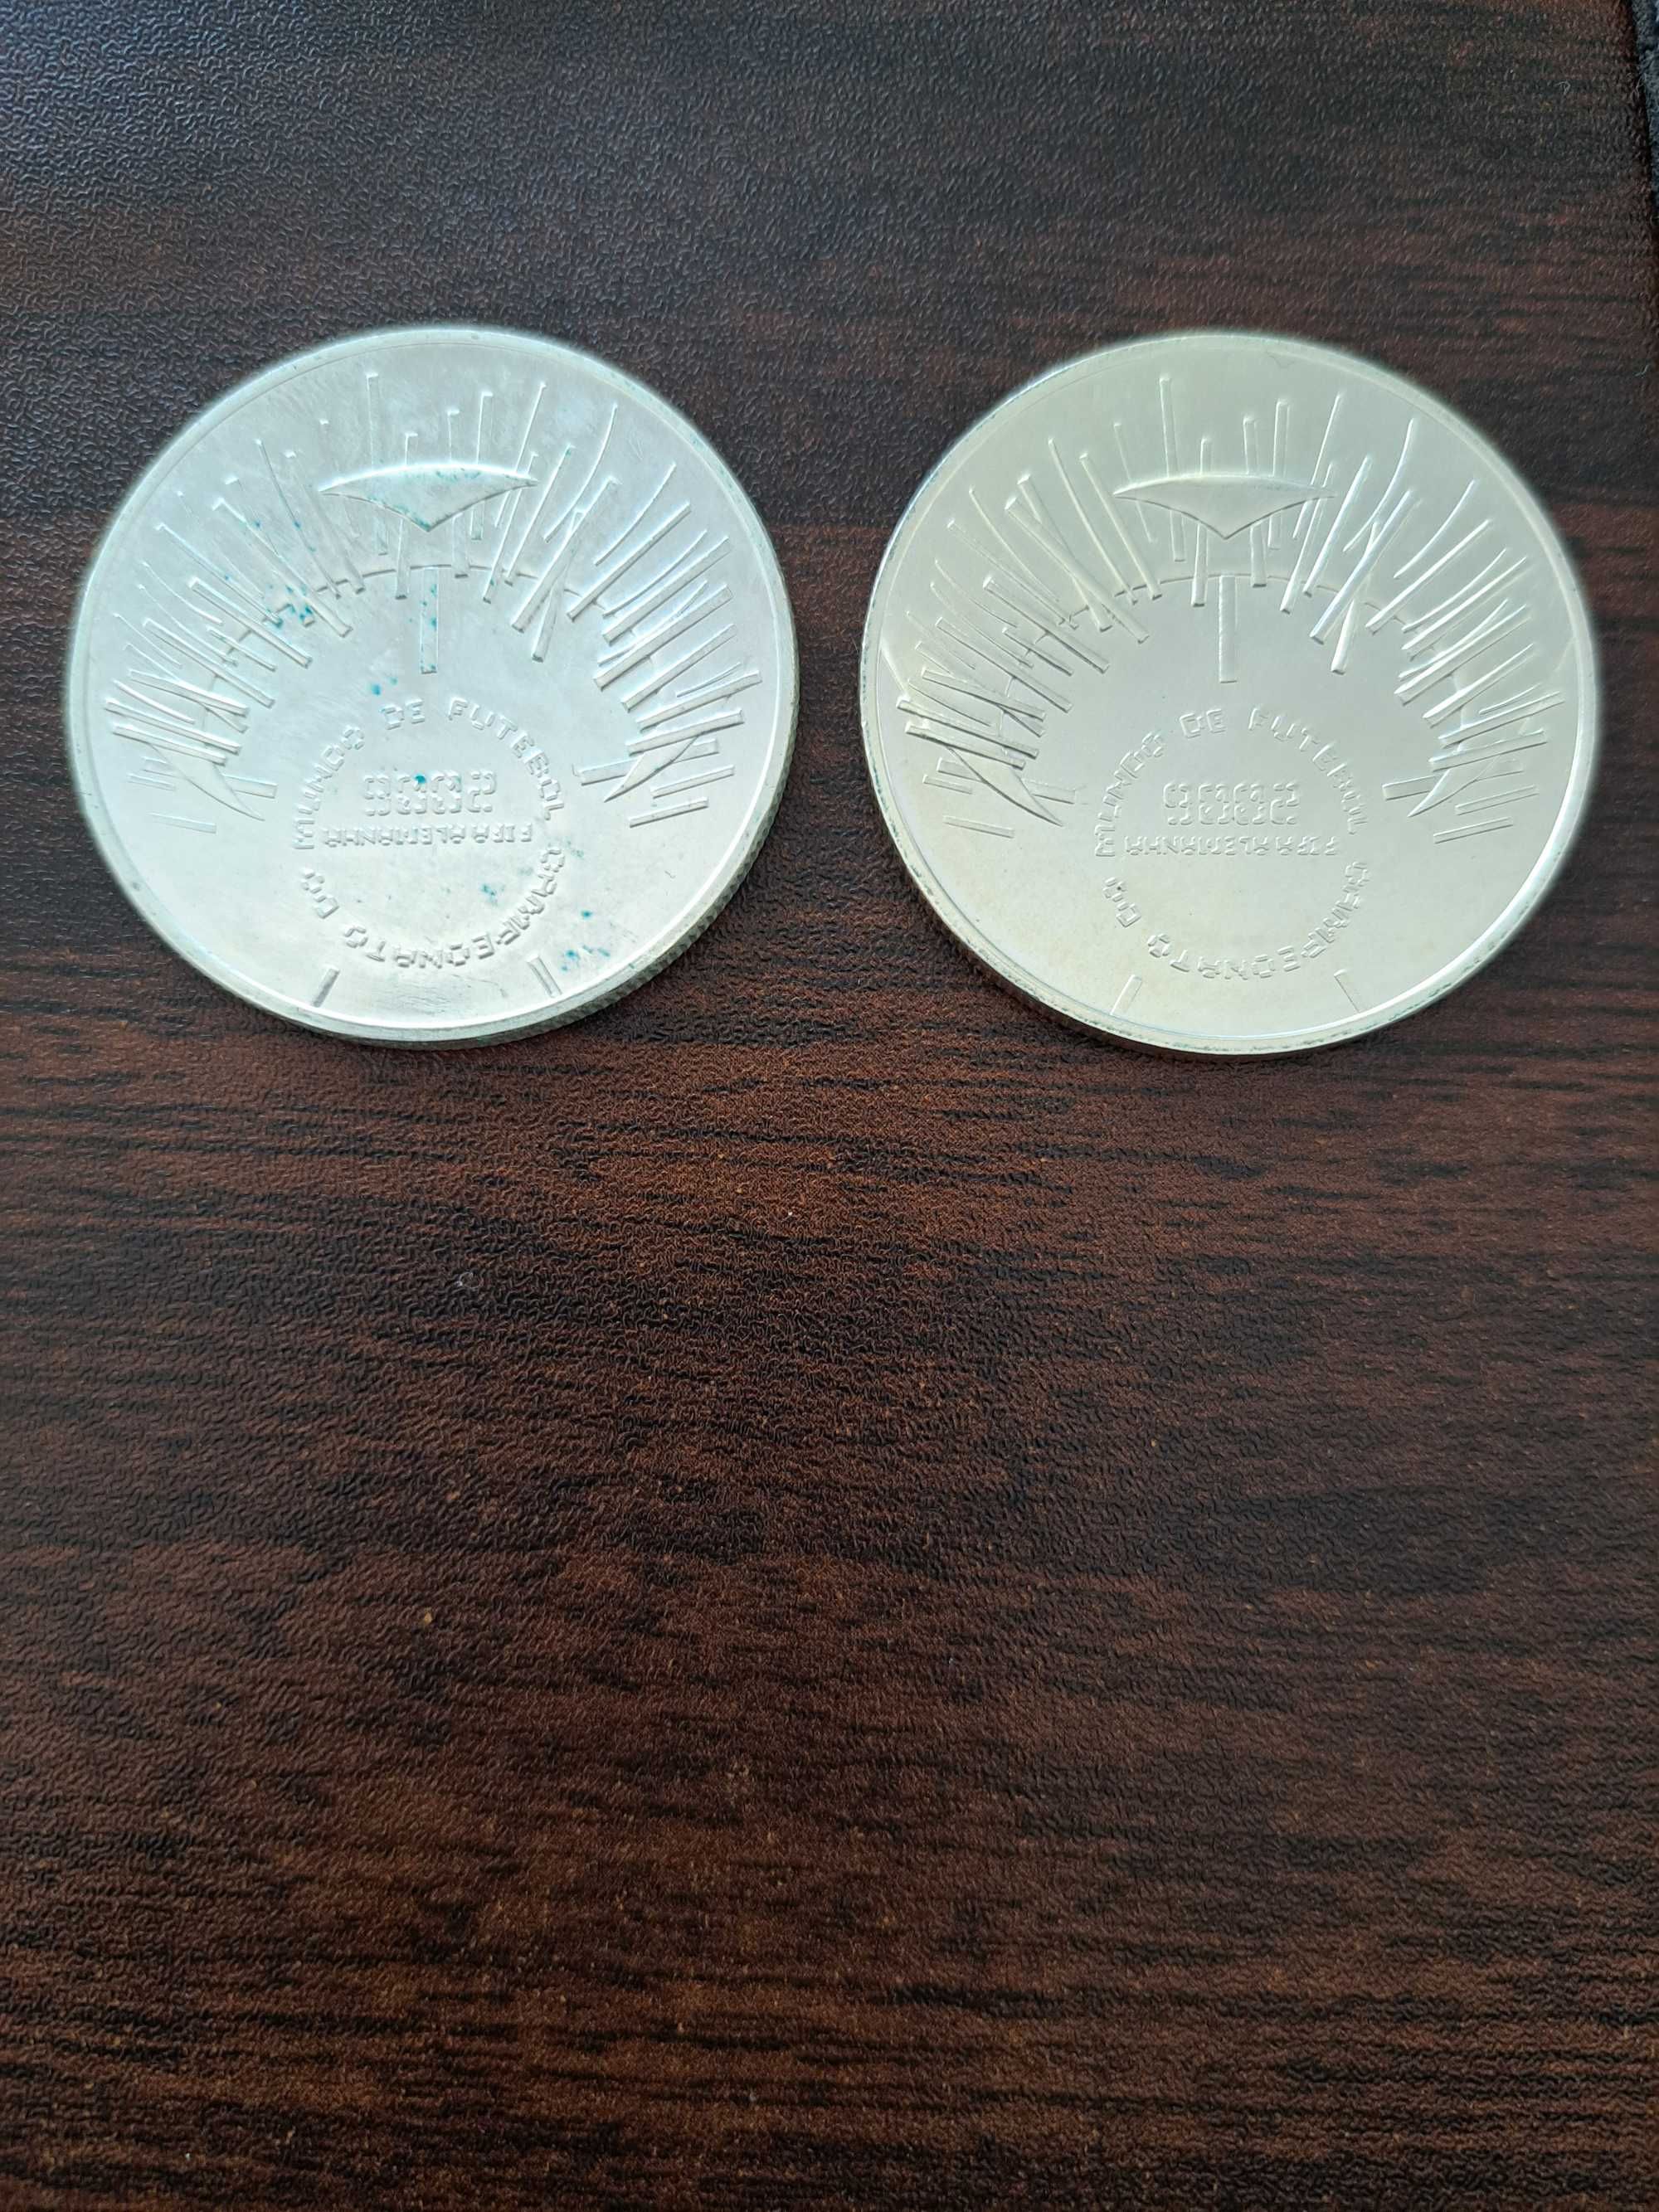 Coleção 6 Moedas Euro 2004/Centavos1948/50 Centavos/One Penny 1922